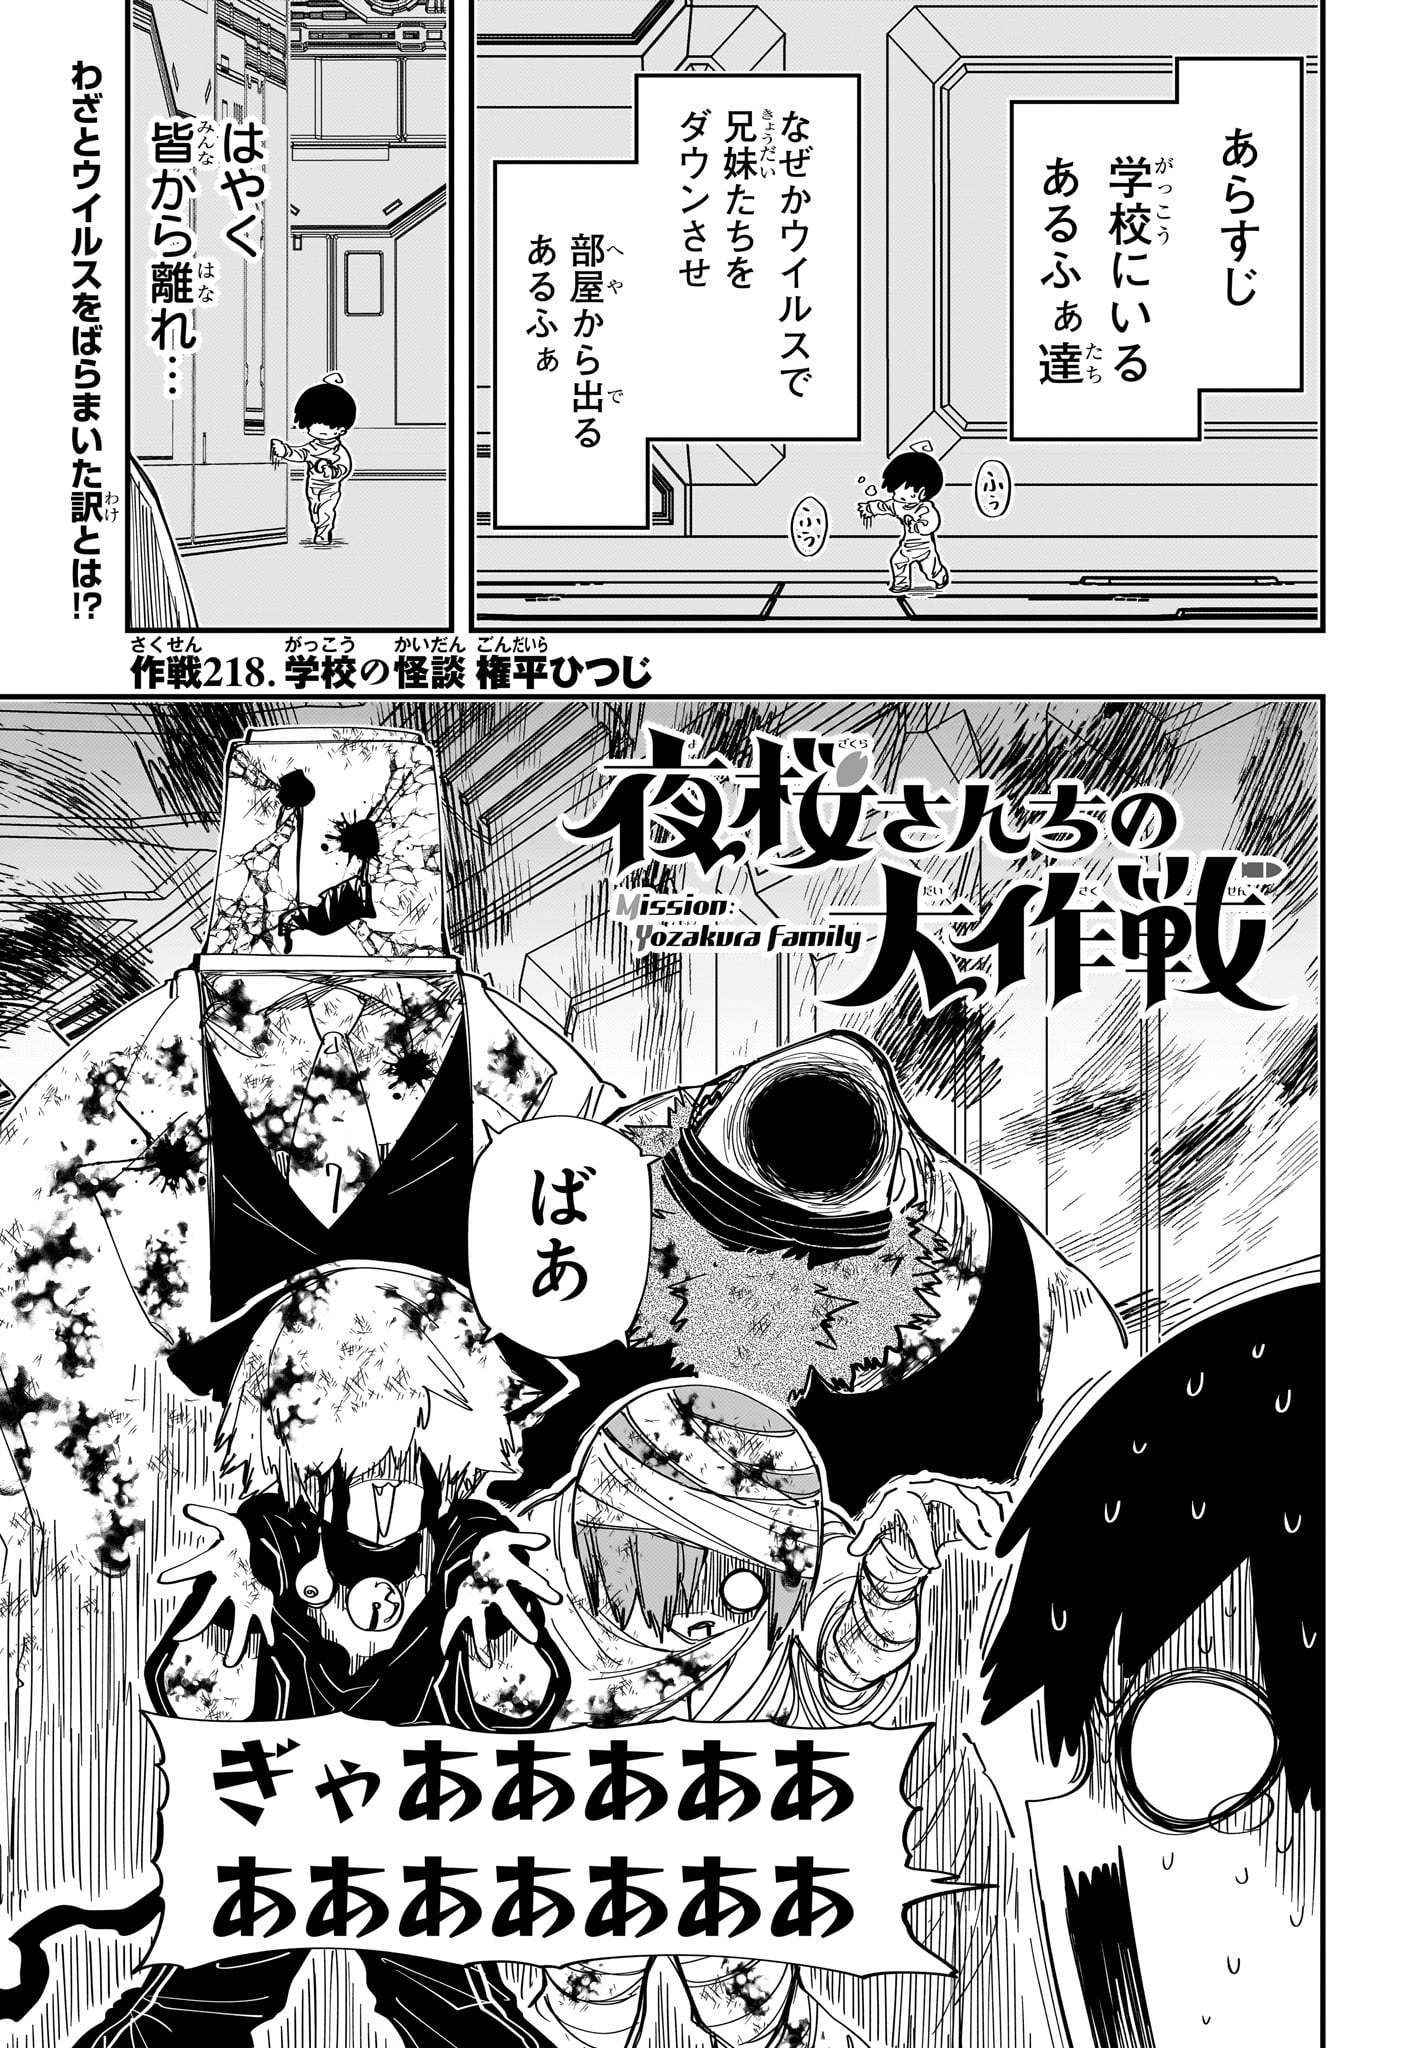 Yozakura-san Chi no Daisakusen - Chapter 218 - Page 1